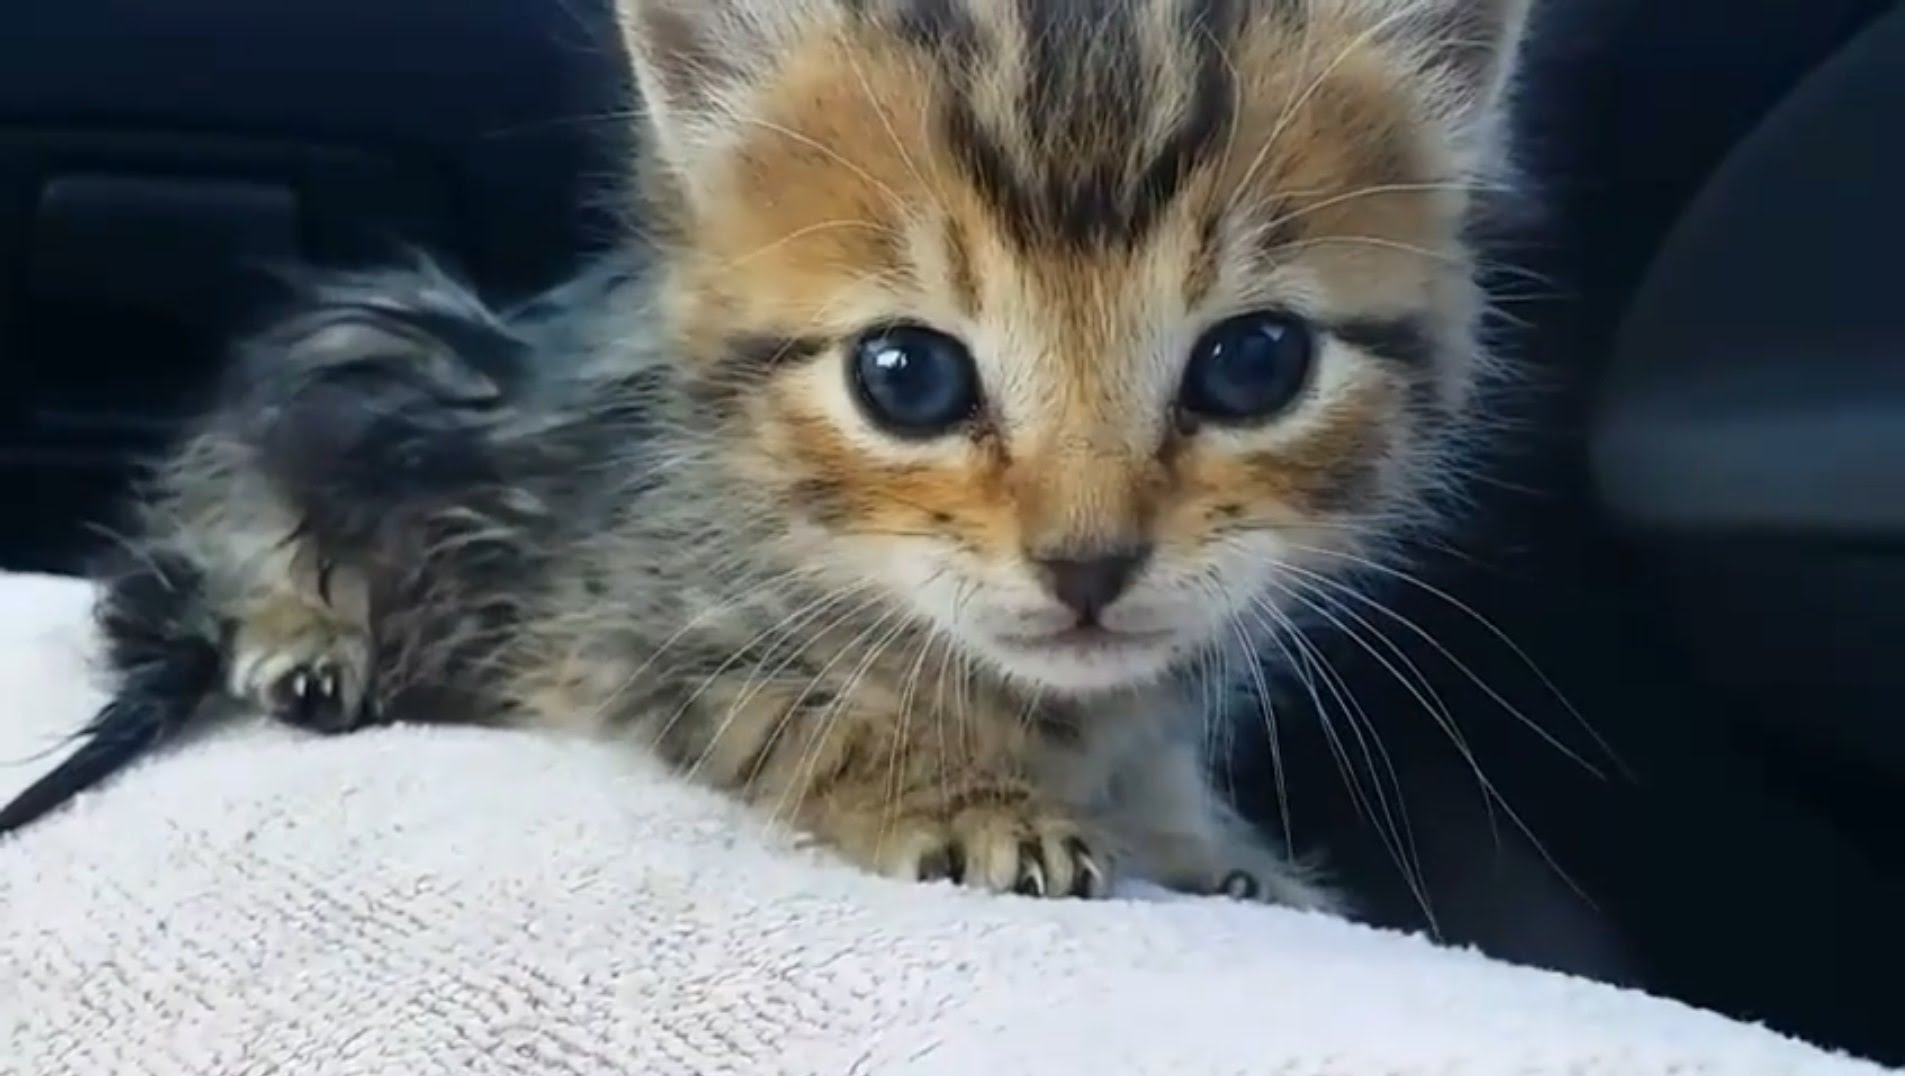 Saving an abandoned kitten